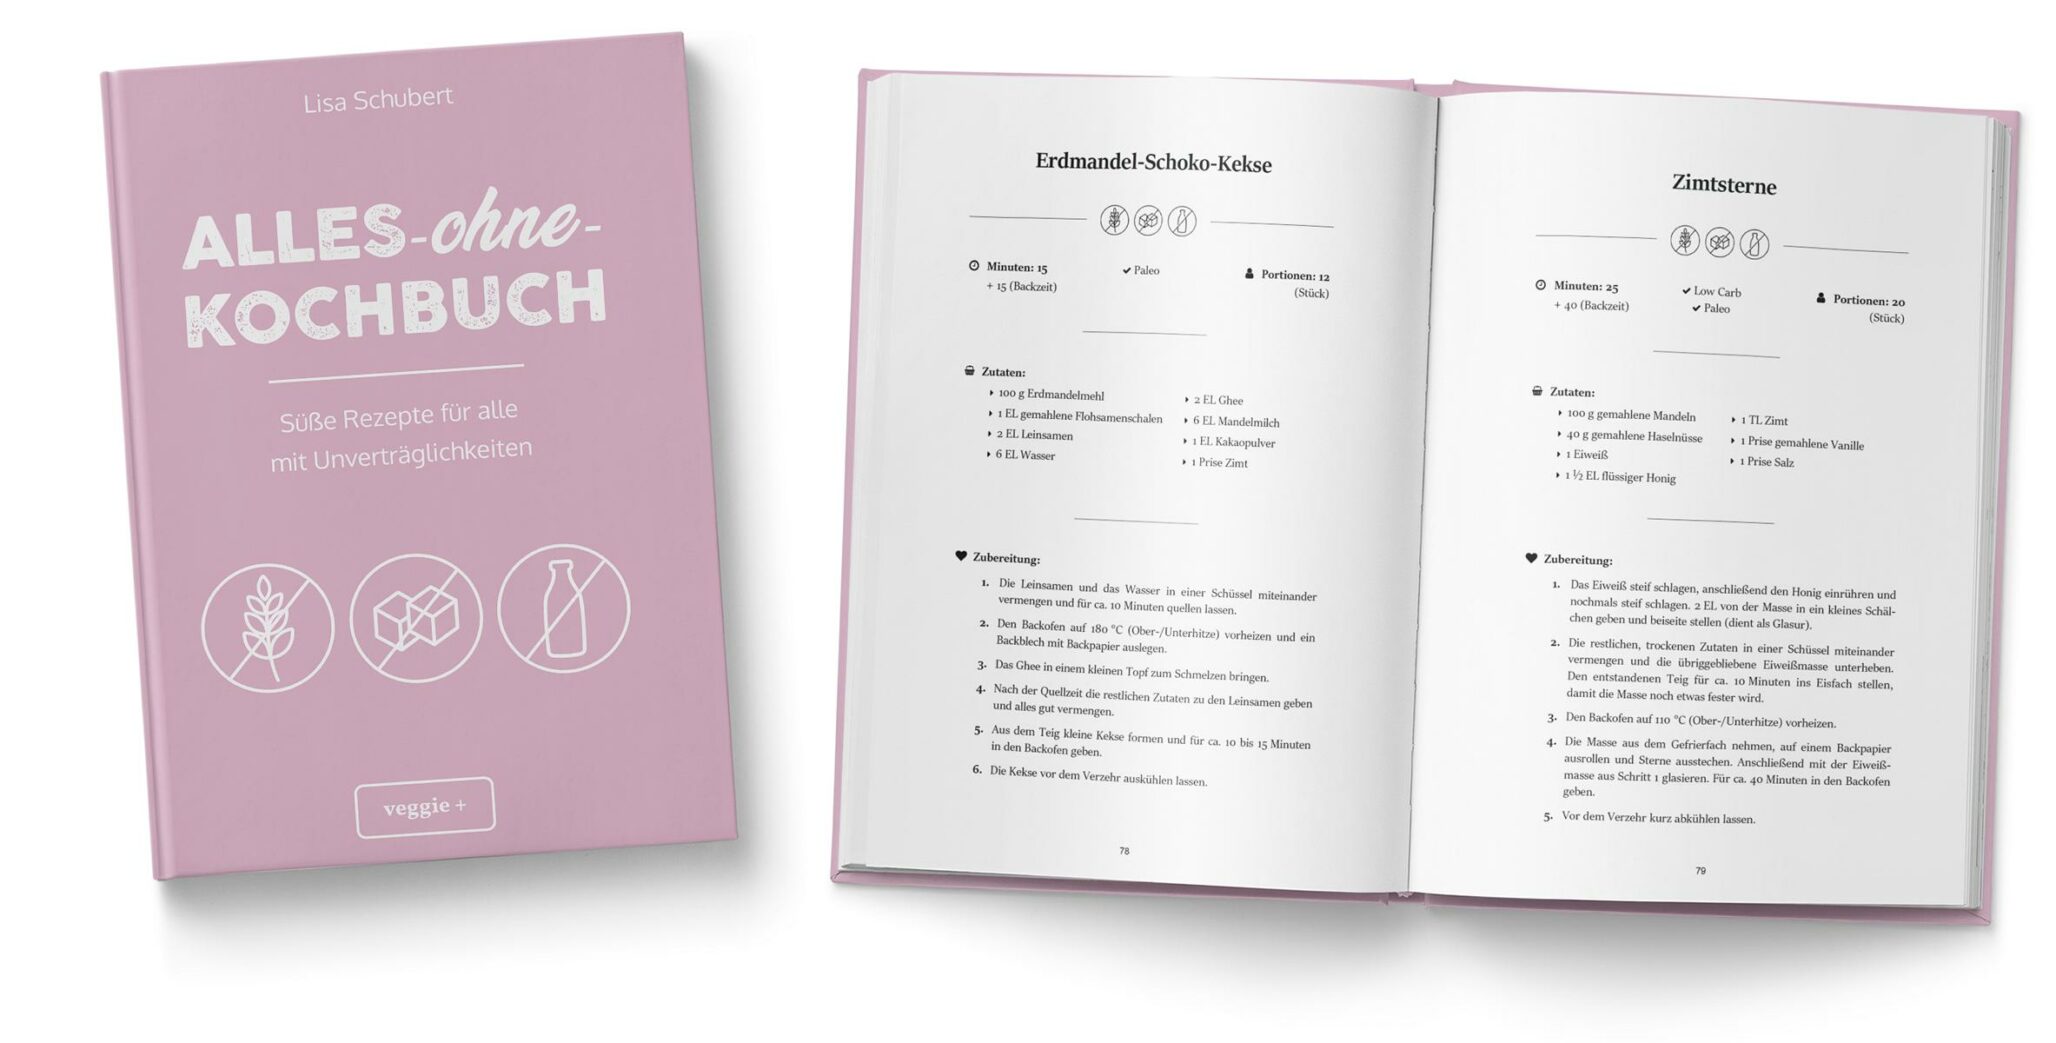 Alles-ohne-Kochbuch: Süße Rezepte für alle mit Unverträglichkeiten von Lisa Schubert im veggie + Verlag